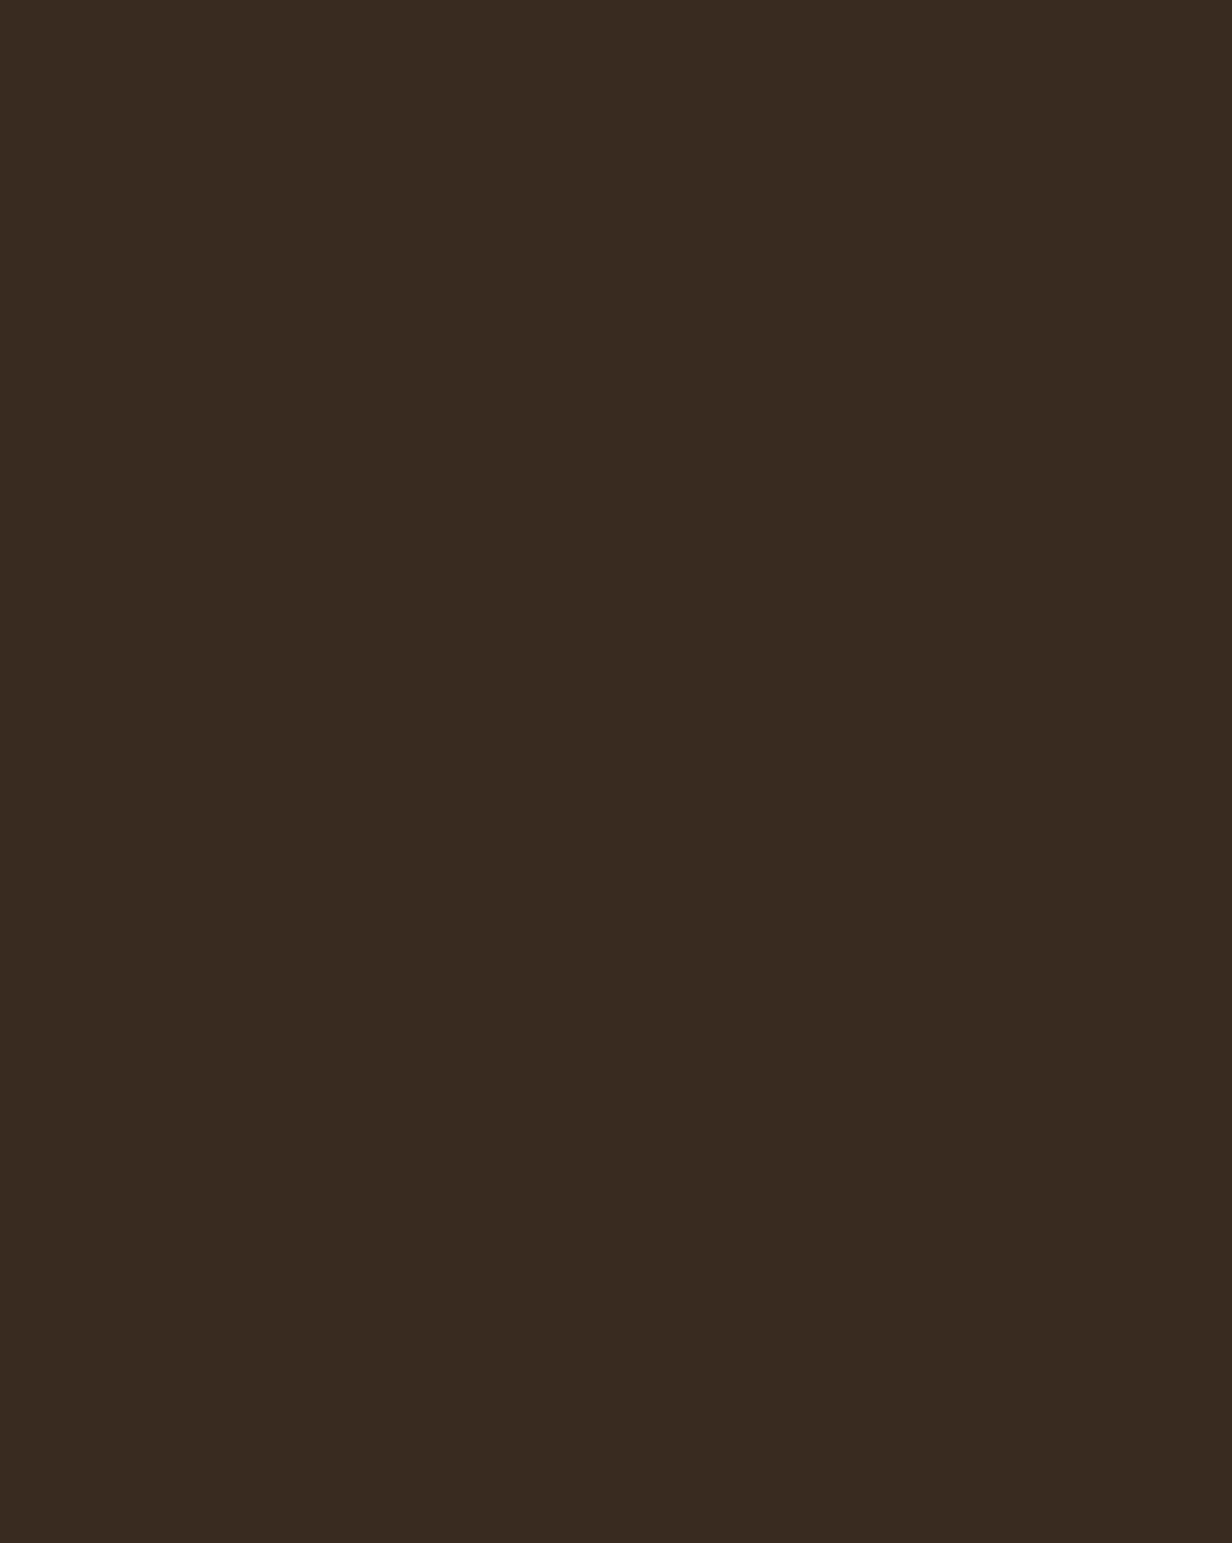 Иван Крамской. Портрет художника Григория Мясоедова (фрагмент). 1872. Государственная Третьяковская галерея, Москва